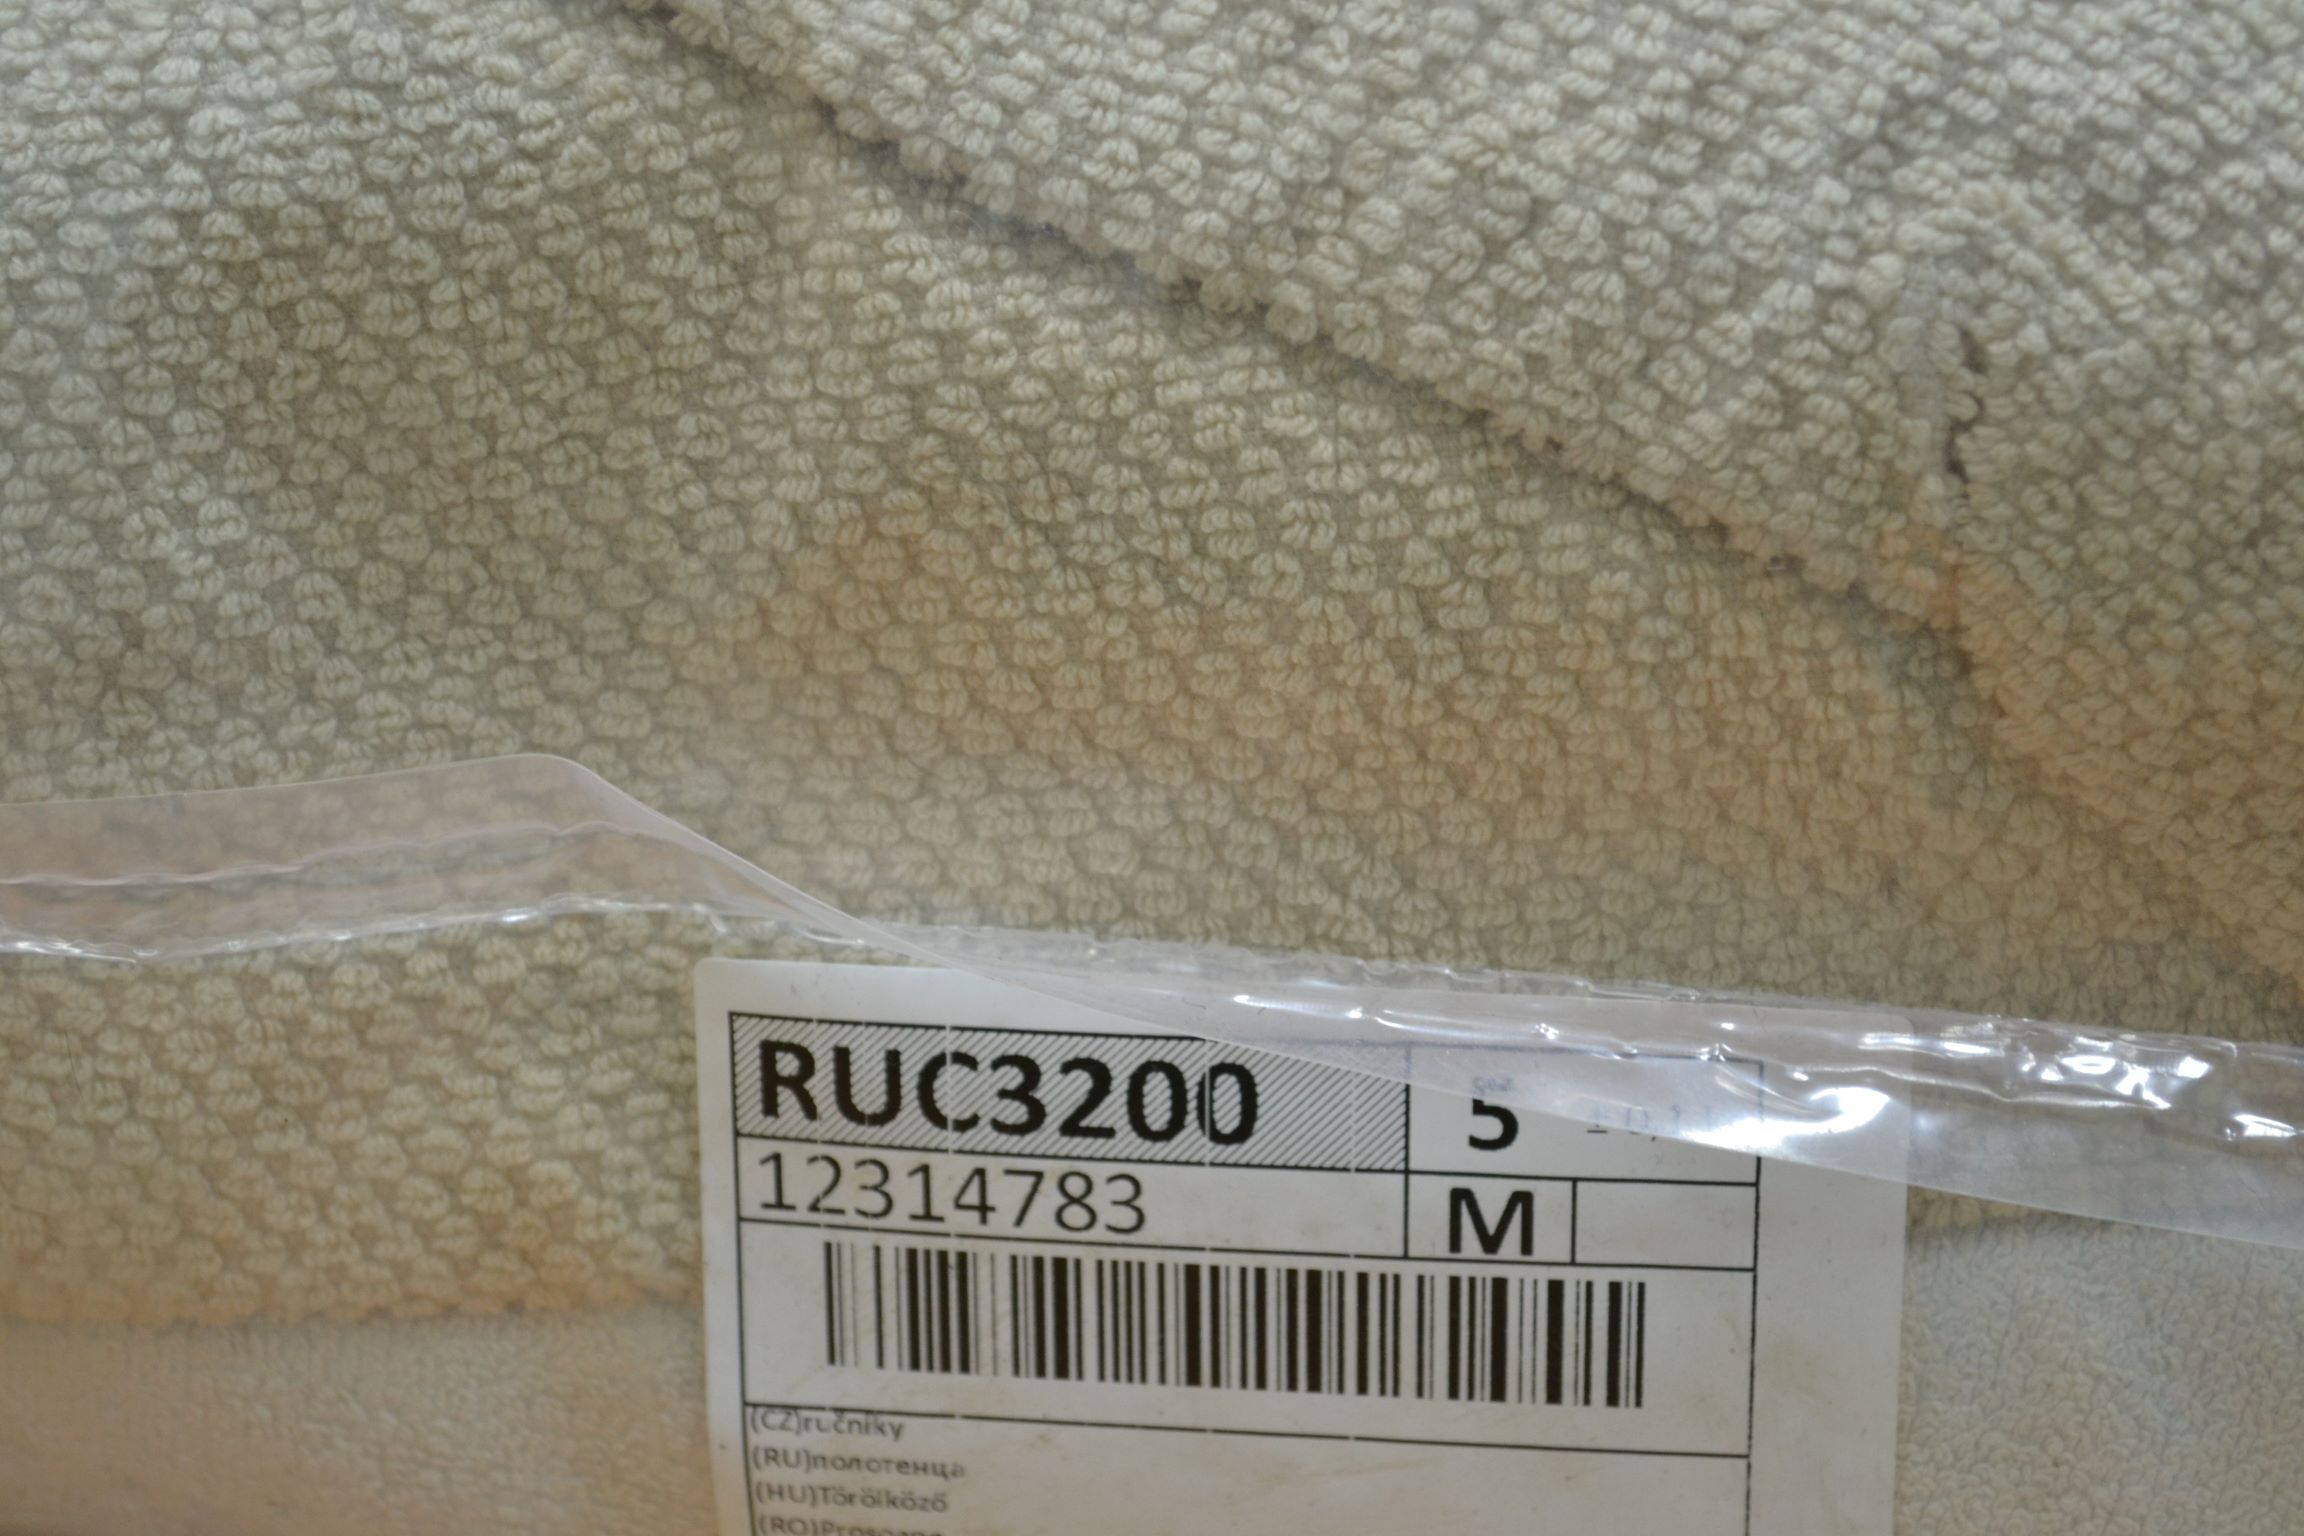 RUC3200 Полотенца; код мешка c 12314783